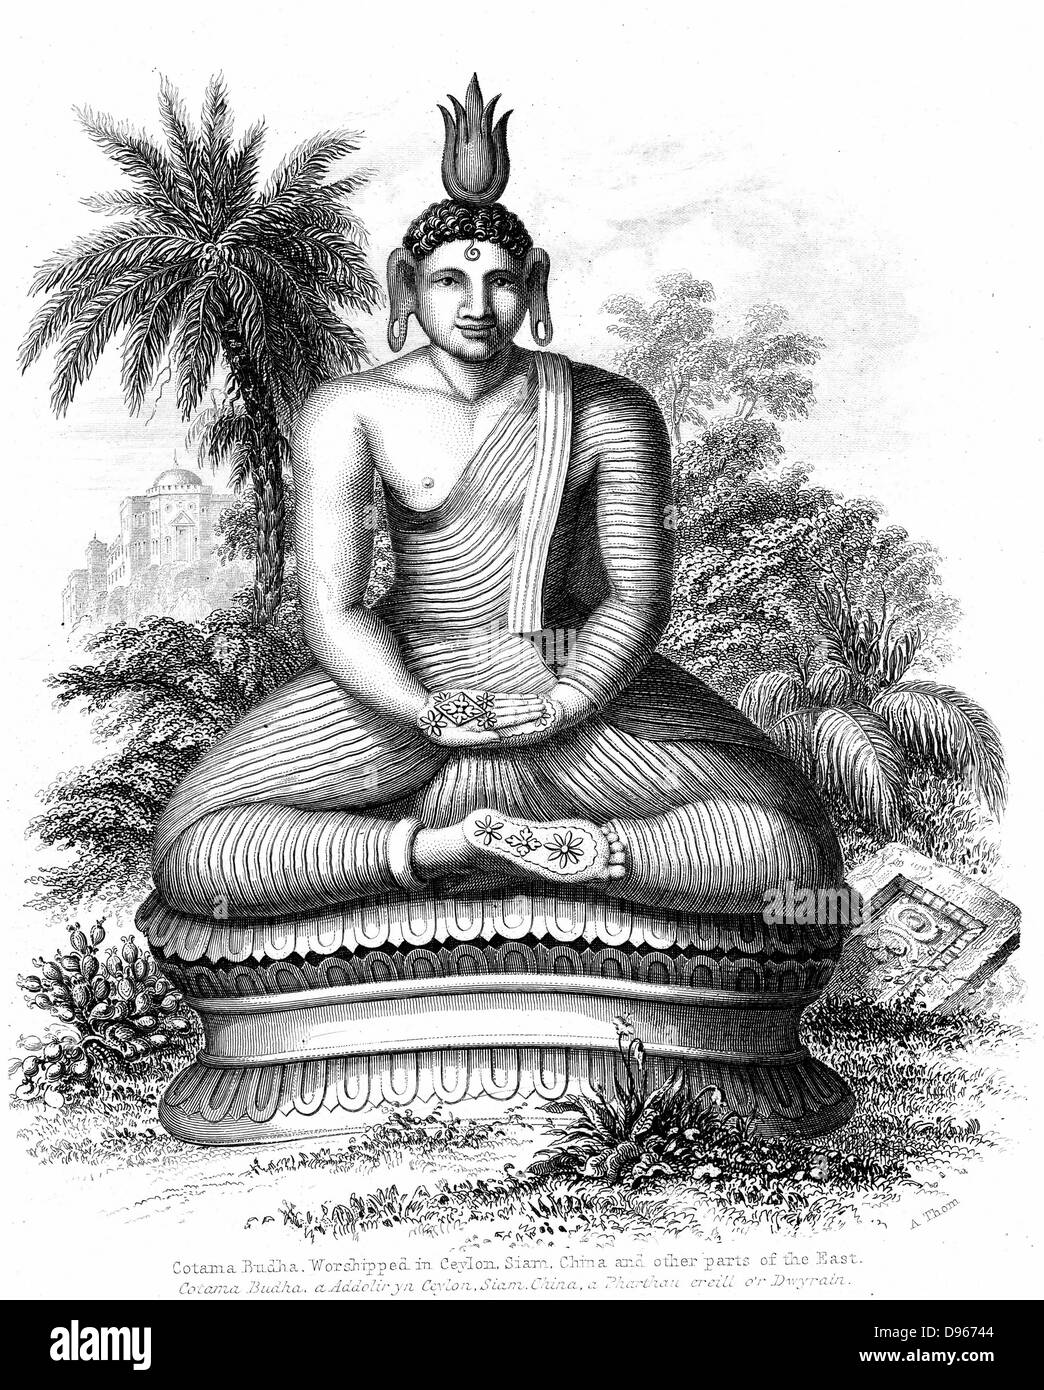 Cotama Buddha, Sri Lanka. Gravur von 1880 Stockfoto